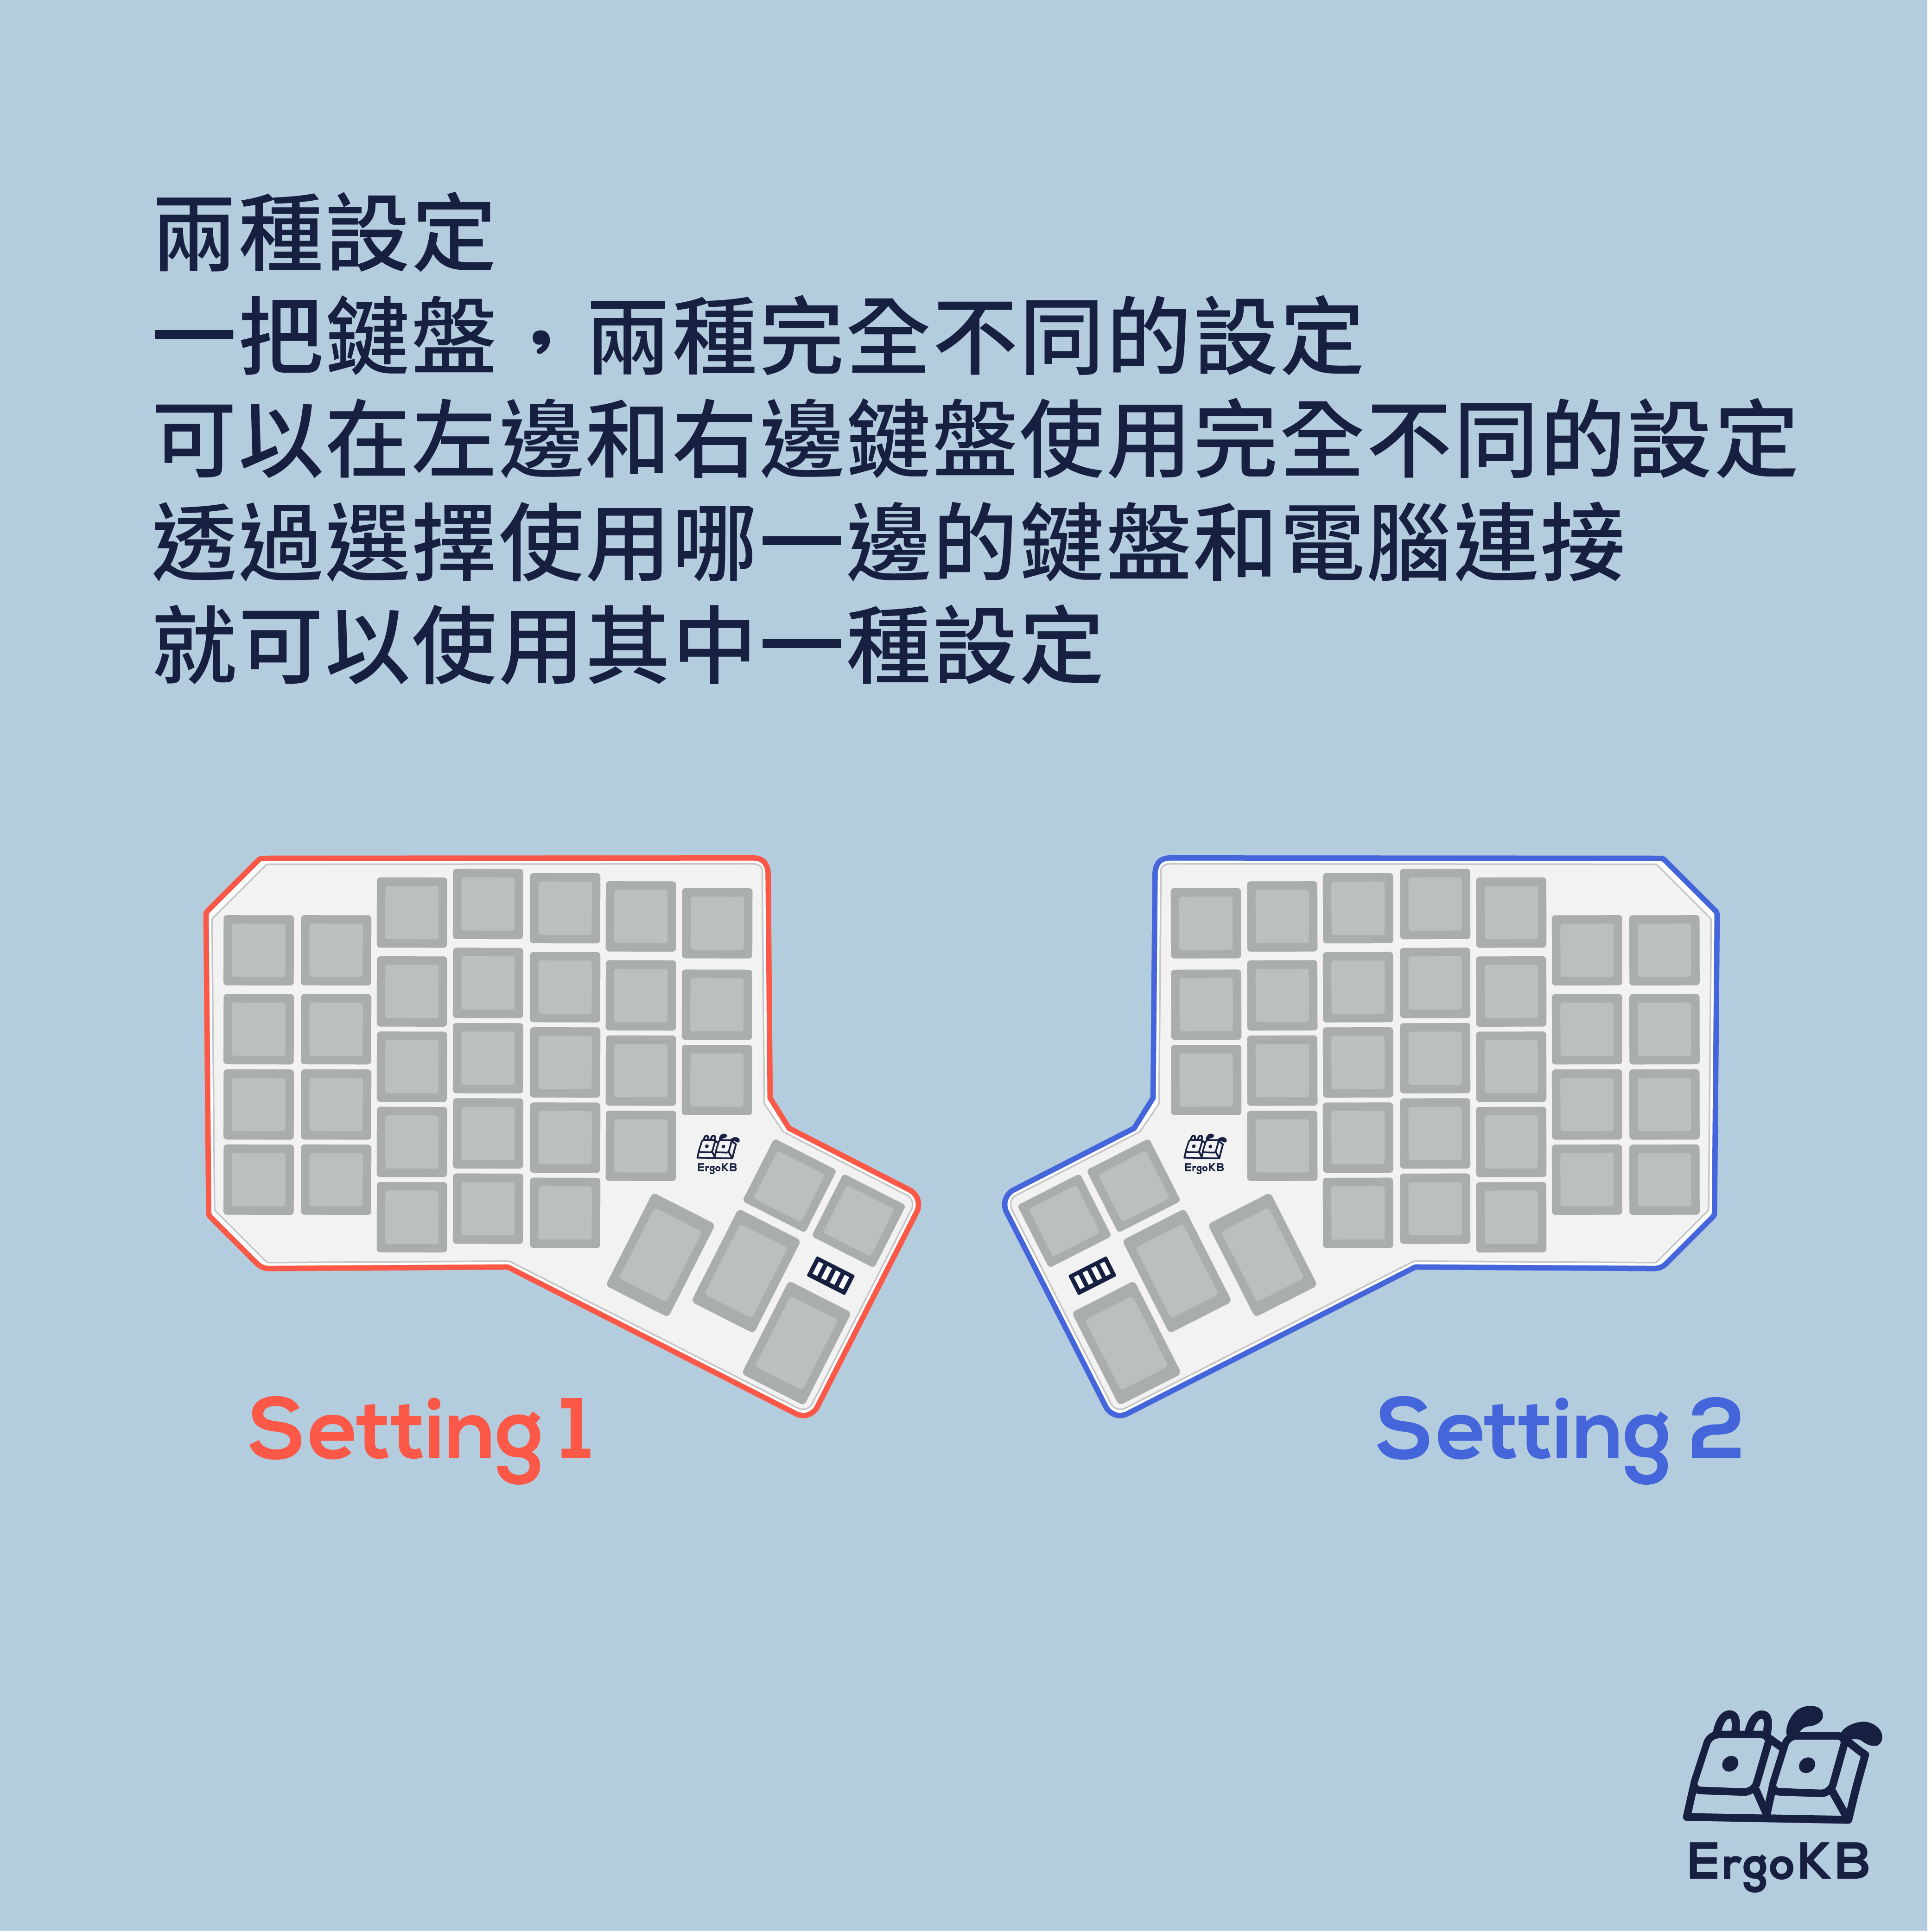 兩種設定，一把鍵盤，兩種完全不同的設定，可以在左邊和右邊鍵盤使用完全不同的設定，透過選擇使用那一邊的鍵盤和電腦連接，就可以使用其中一種設定